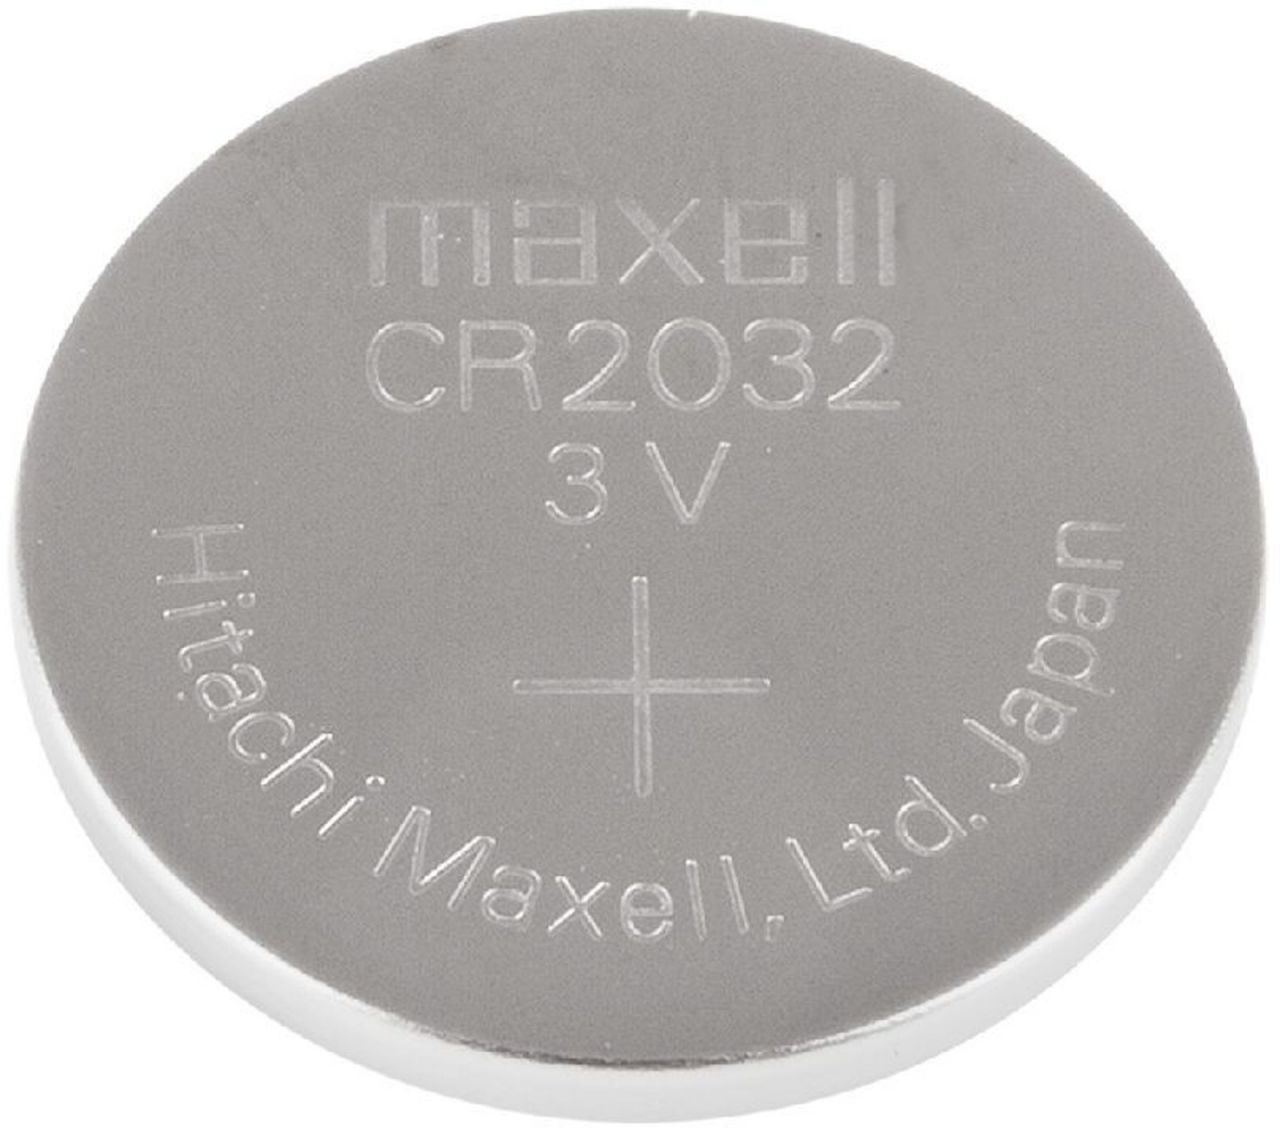 maxell cr2032 batterie 5er blister 3v lithium knopfzelle cr2032